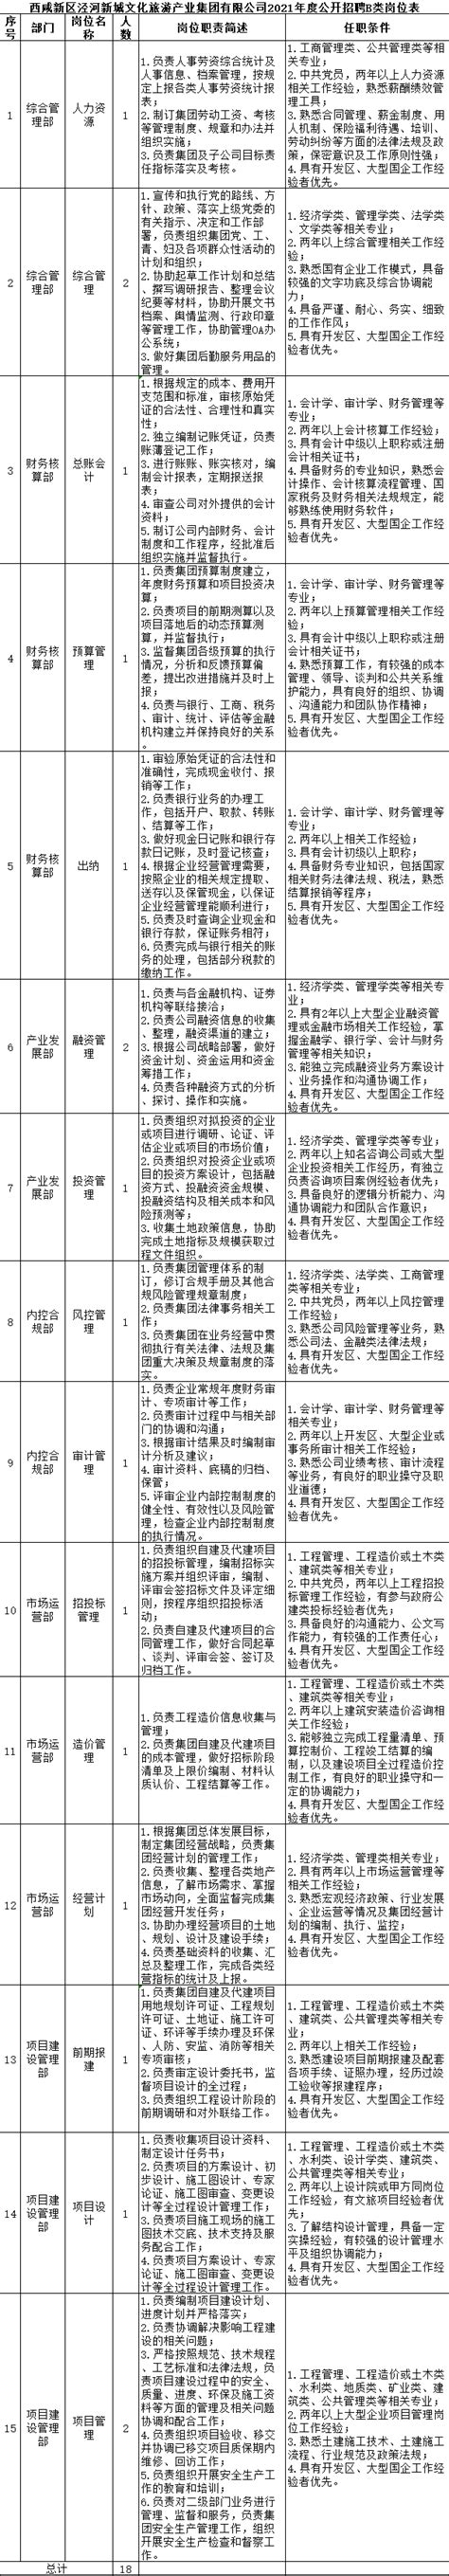 西咸新区与咸阳290项政务服务高频事项实现跨区通办 - 西咸新闻 - 陕西网